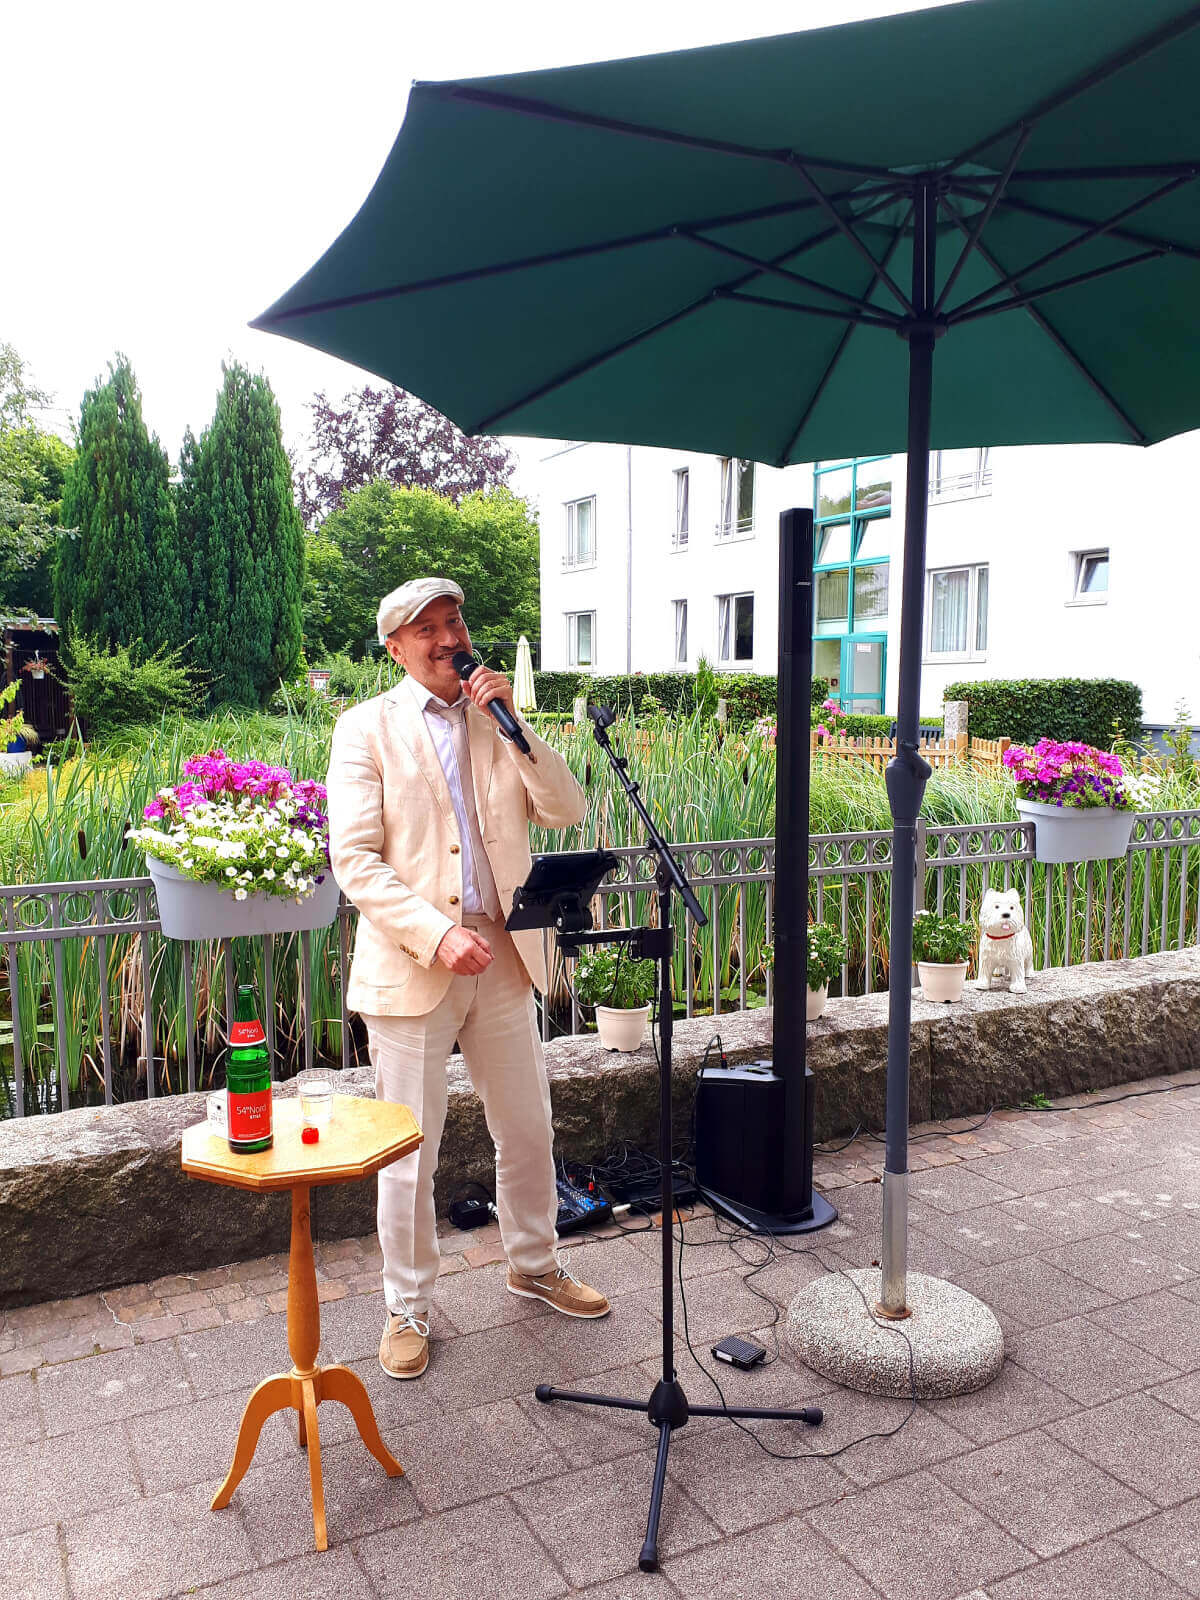 Sänger Herr Oswald singt für die Bewohner des Seniorenheims in Lübeck